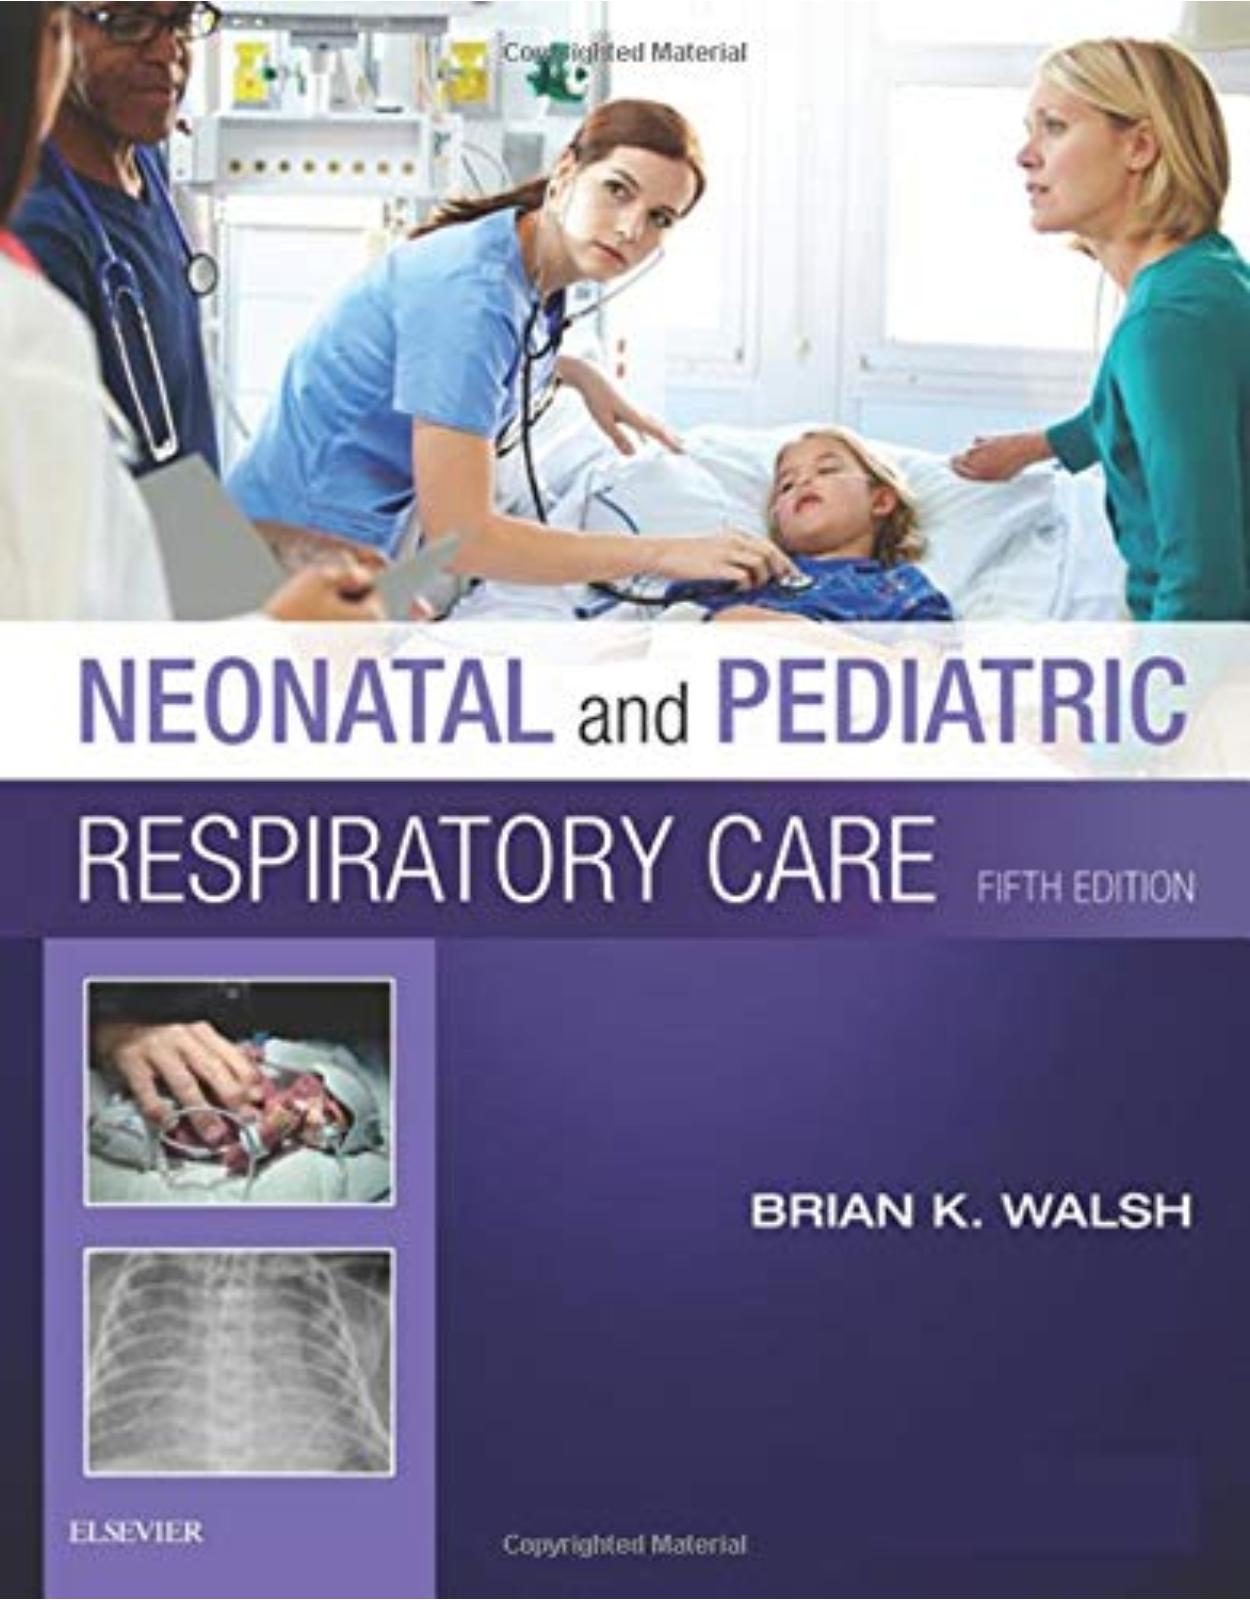 Neonatal and Pediatric Respiratory Care, 5e